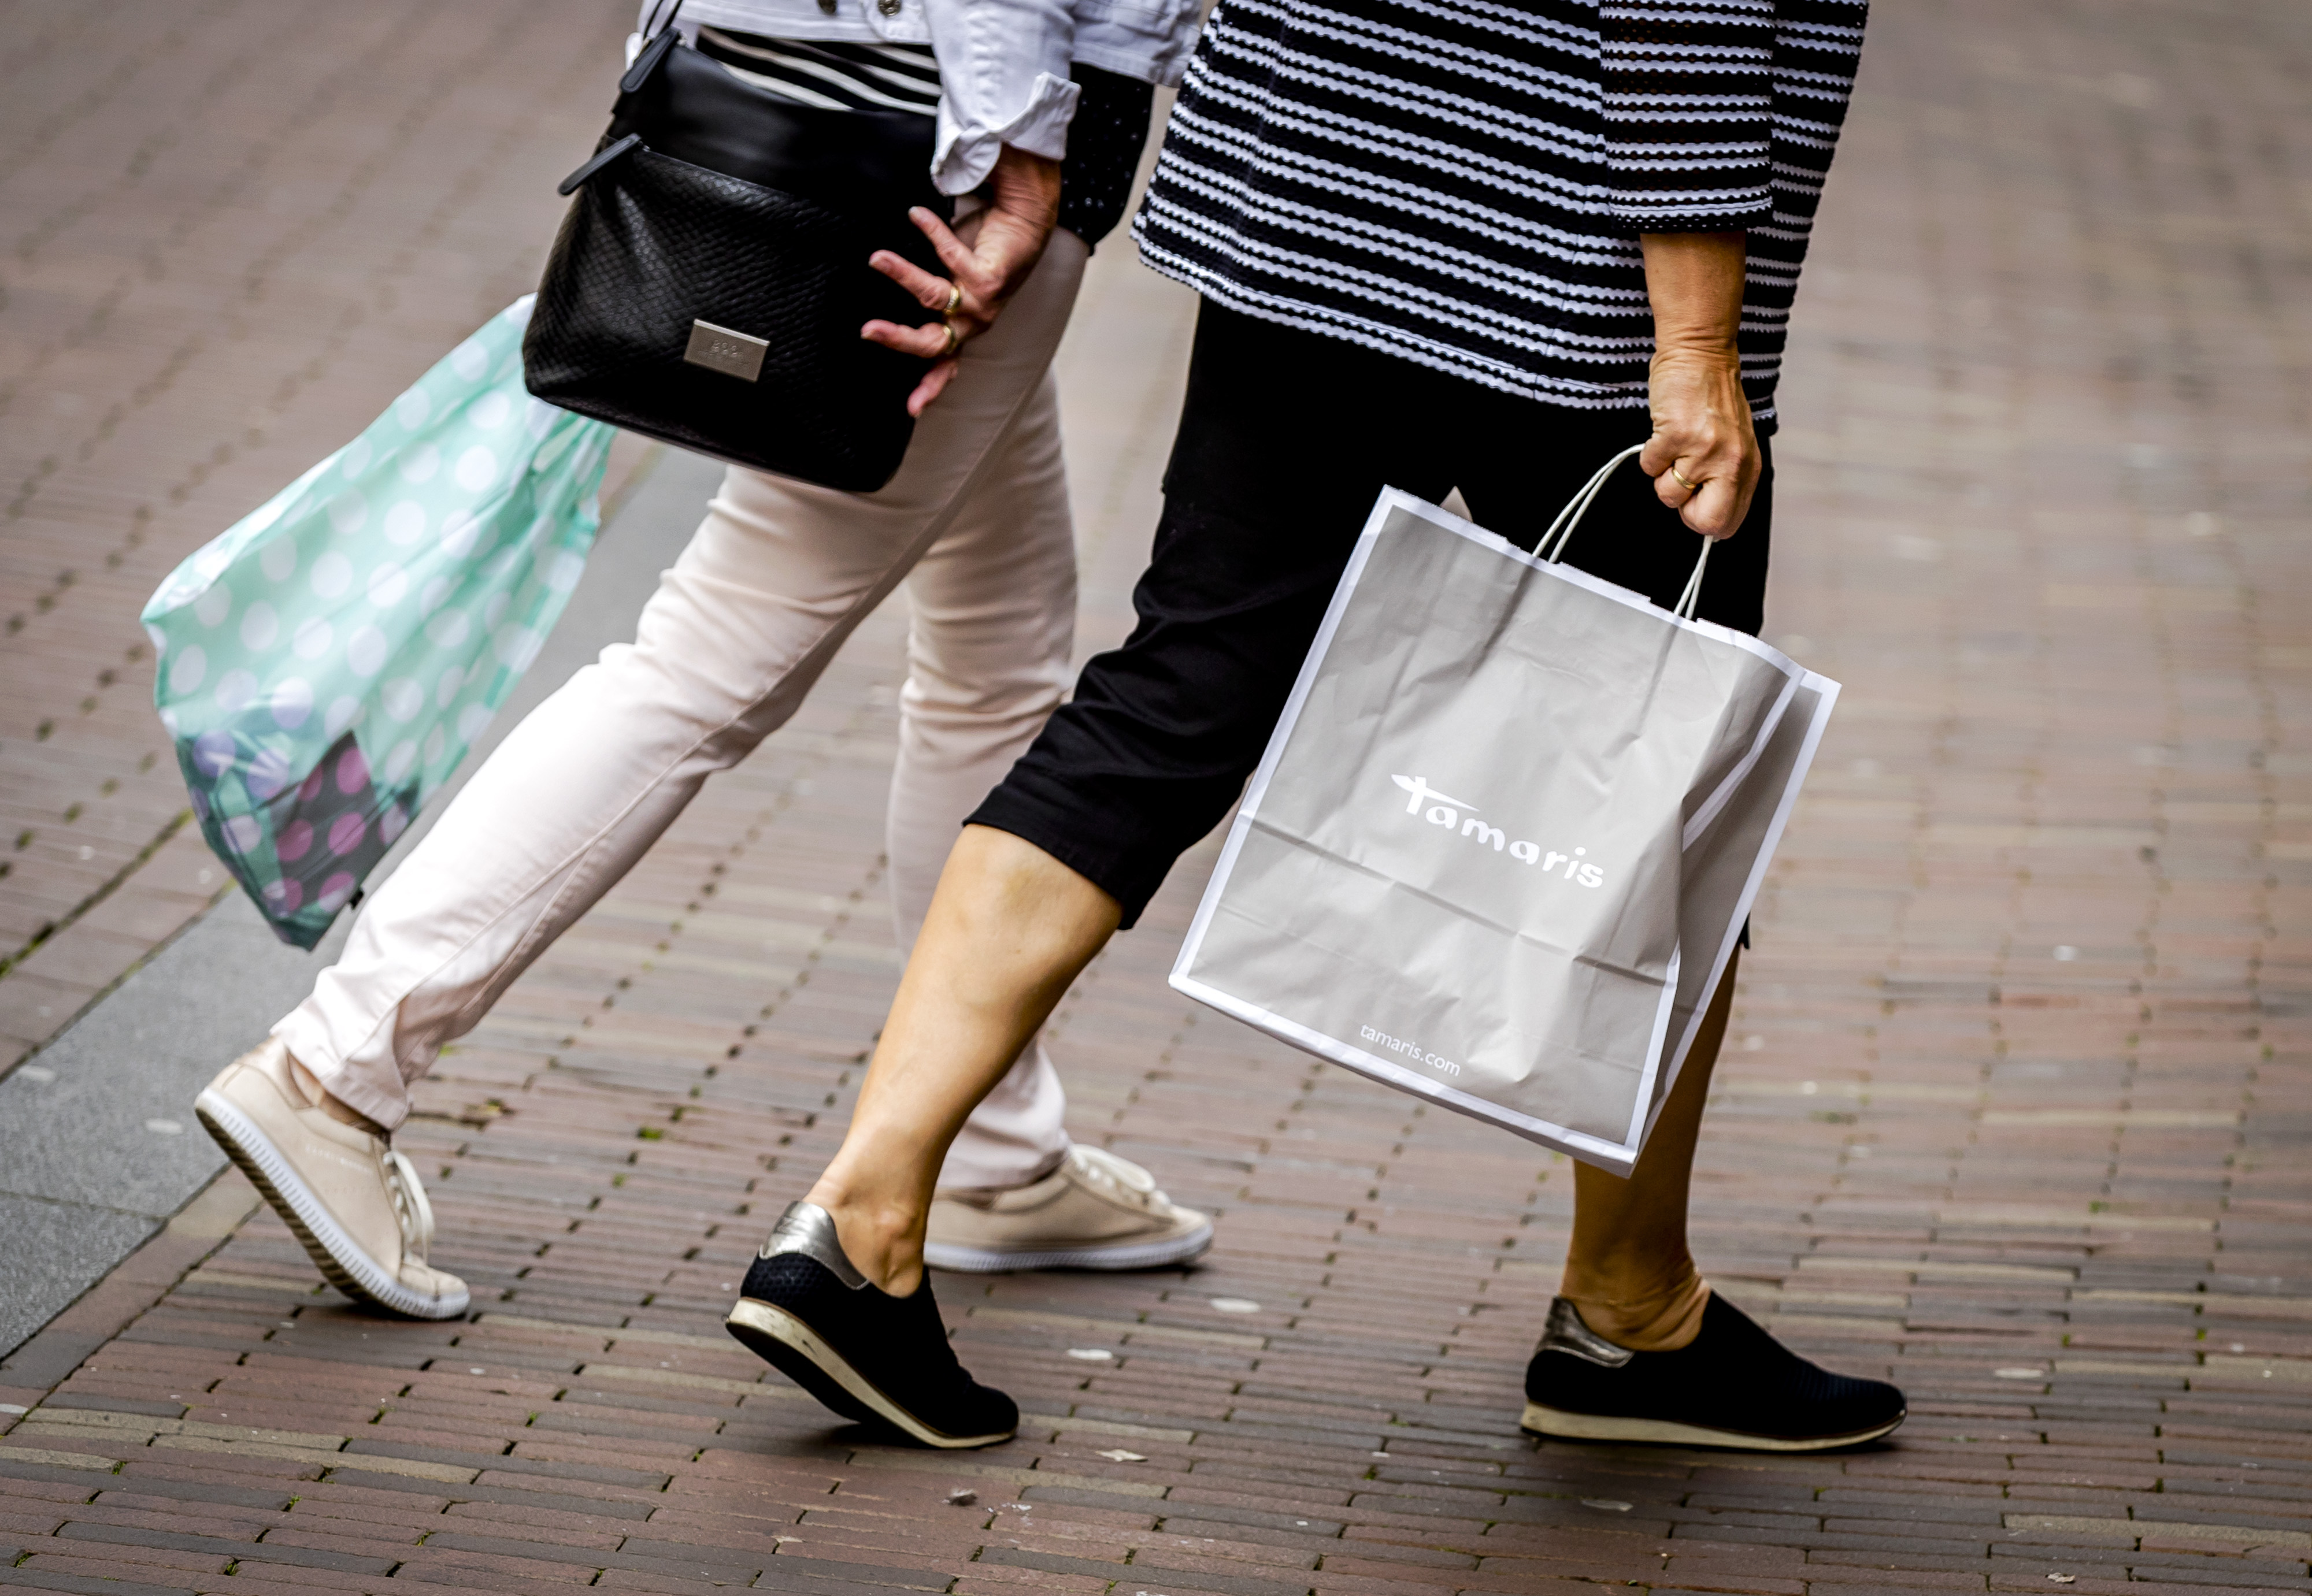 2017-08-16 13:01:44 HAARLEM - Publiek aan het winkelen in de Grote Houtstraat in Haarlem. De Nederlandse economie groeit dit jaar stevig door en komt uit op 3,3 procent. ANP REMKO DE WAAL